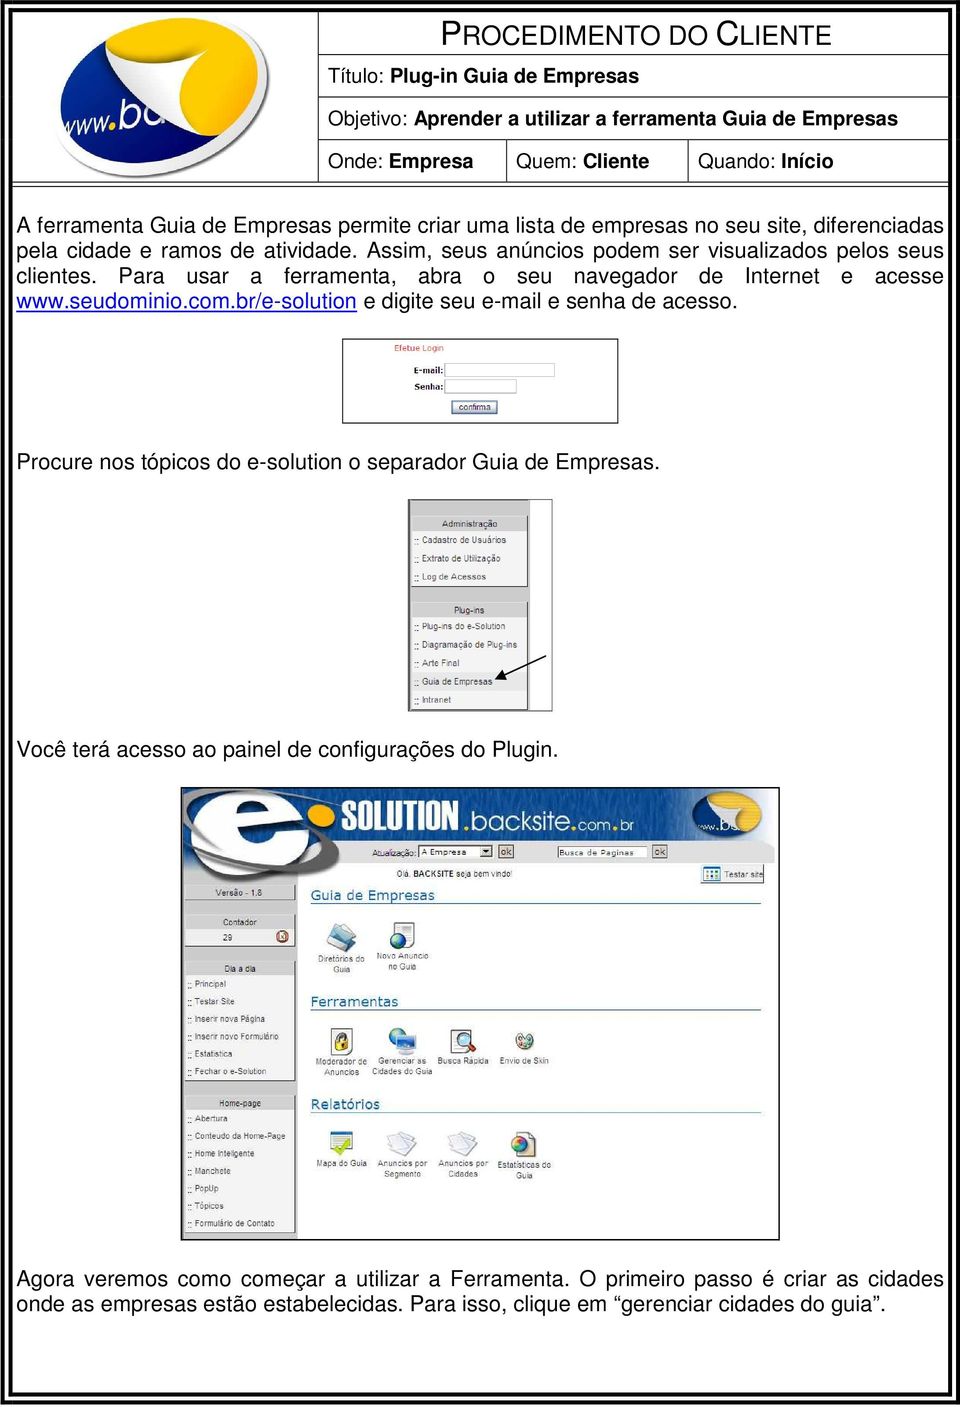 Para usar a ferramenta, abra o seu navegador de Internet e acesse www.seudominio.com.br/e-solution e digite seu e-mail e senha de acesso.